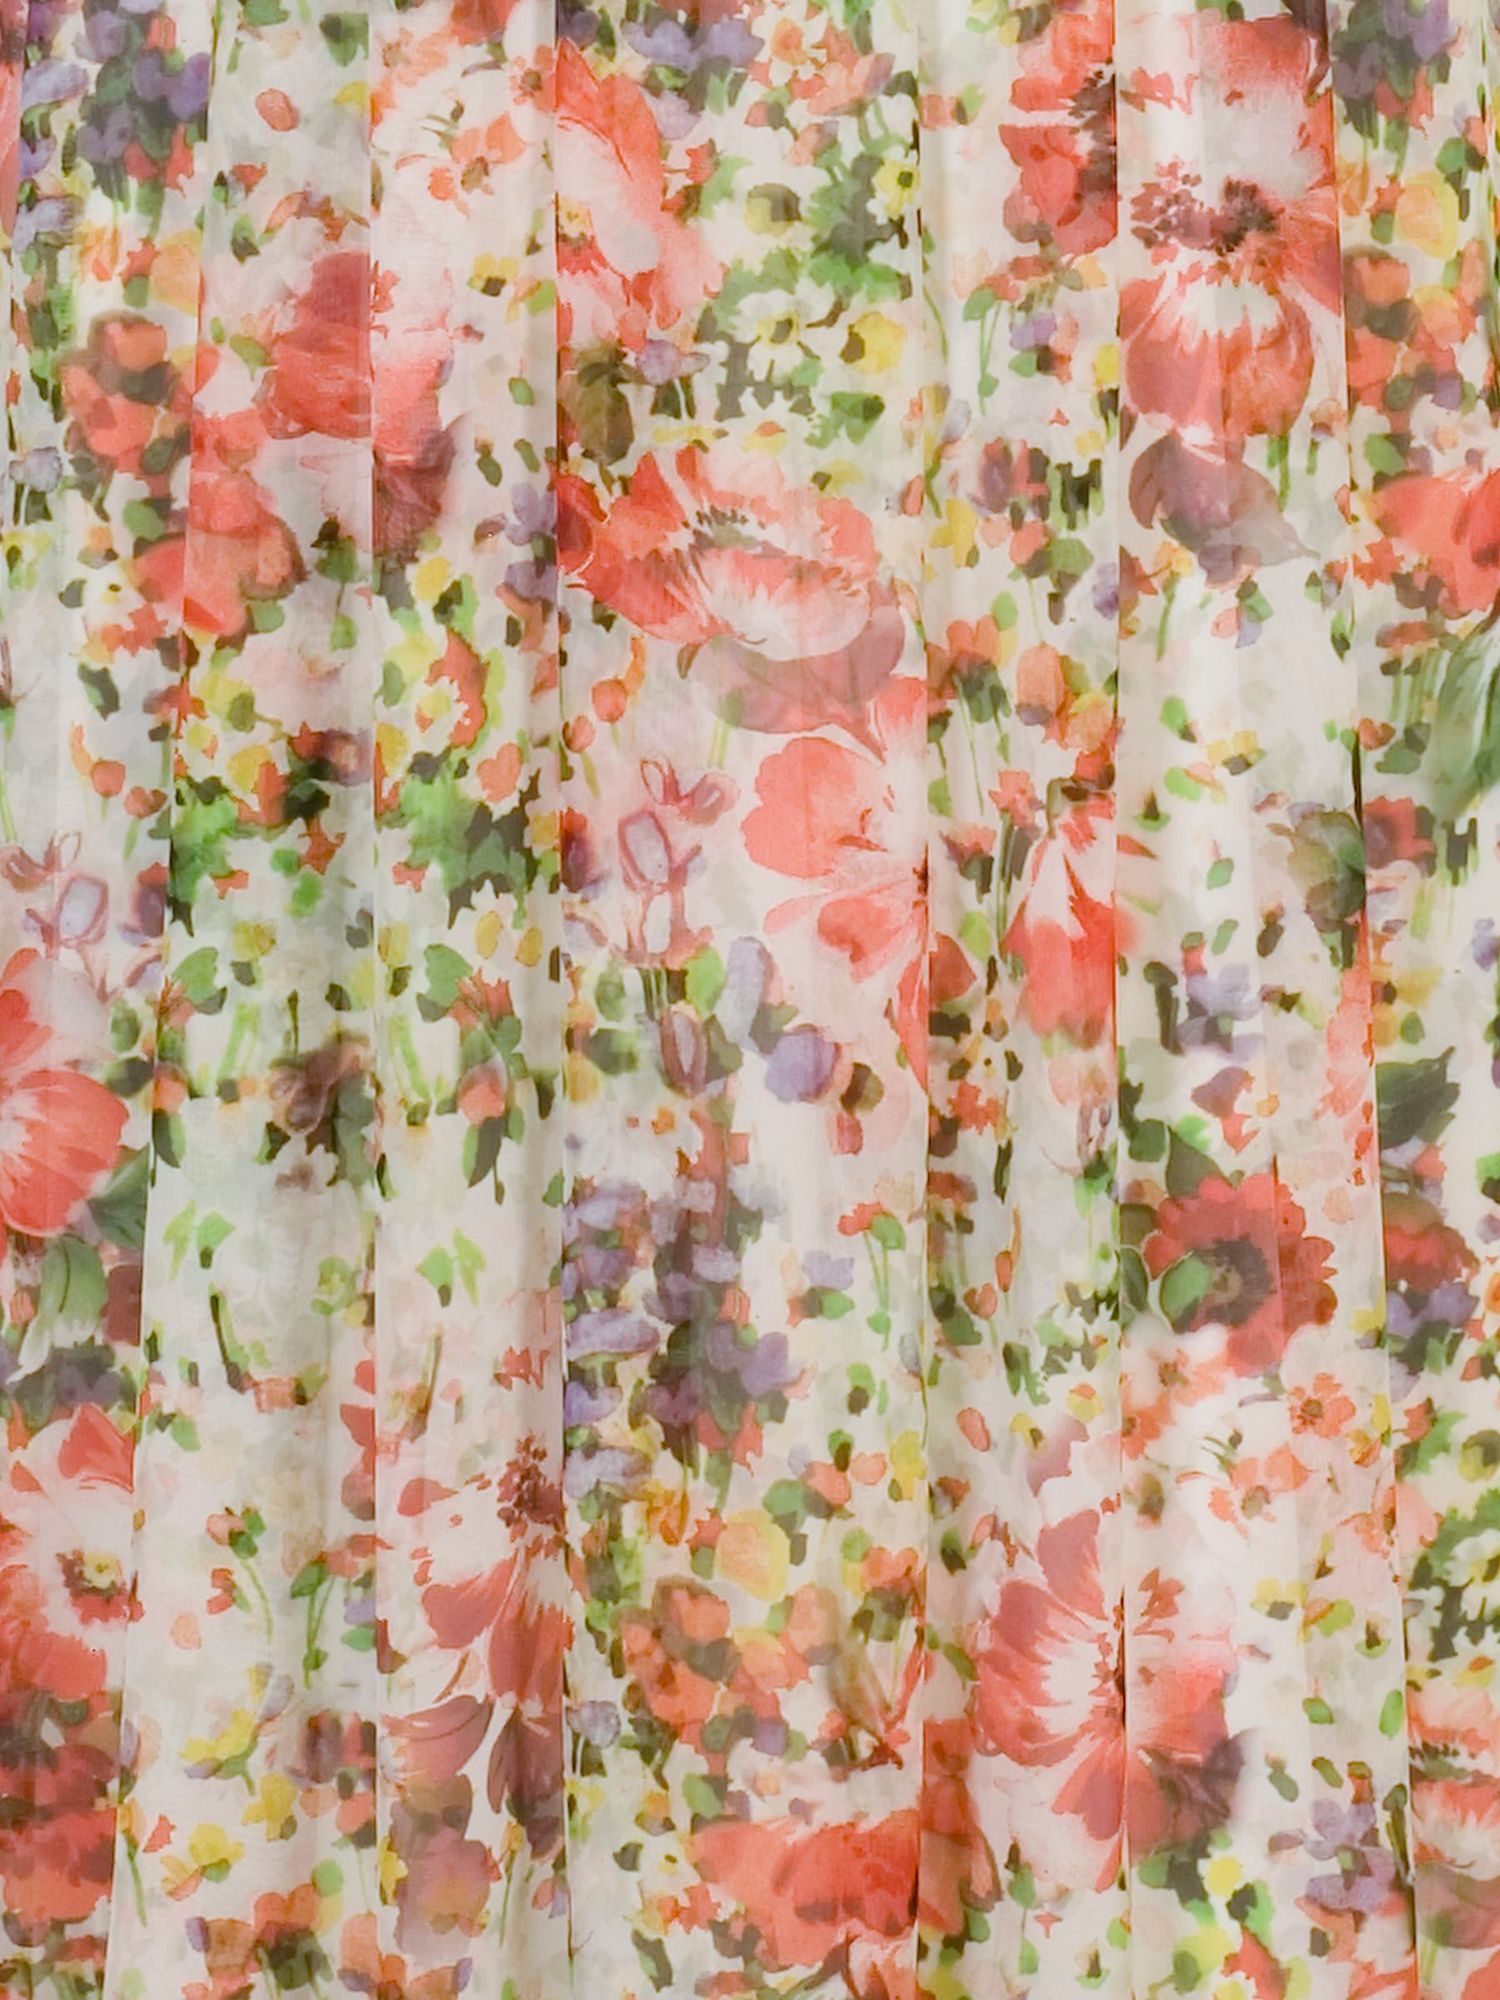 chesca Floral Chiffon Maxi Dress, Multi, 12